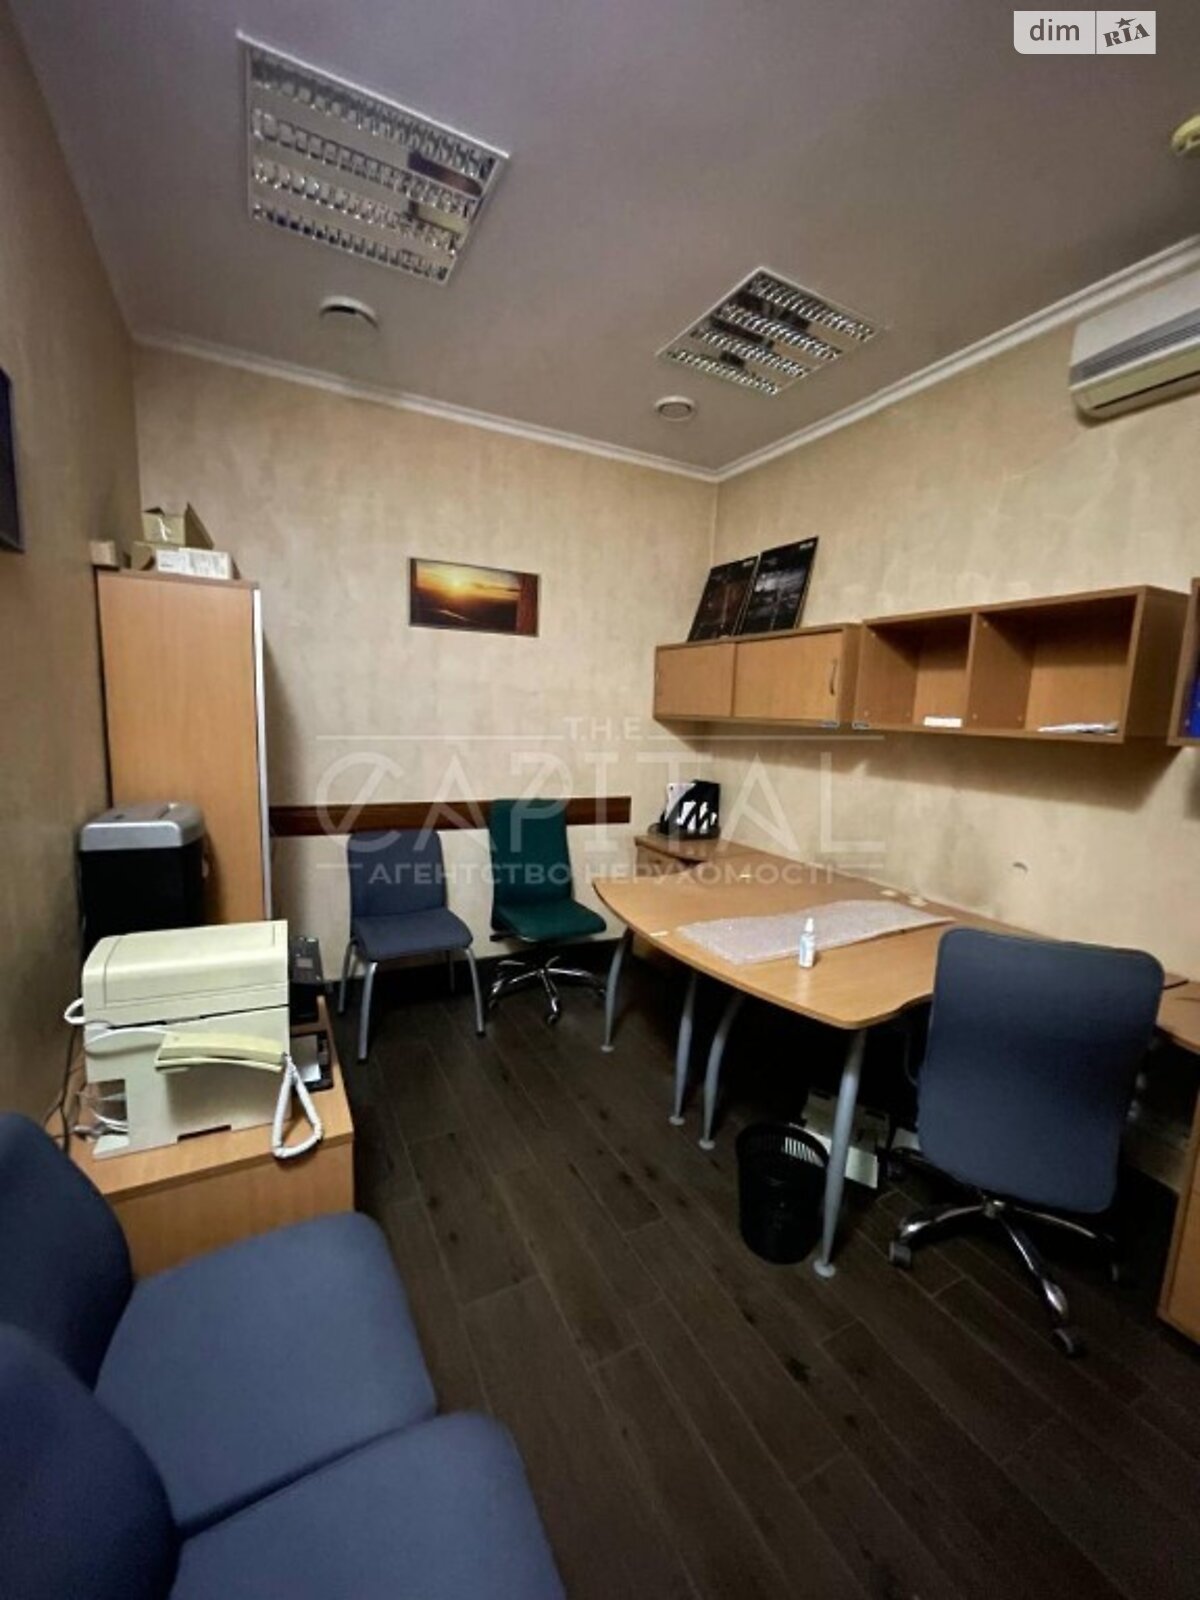 Аренда офисного помещения в Киеве, Голосеевский переулок 15, помещений - 1, этаж - 1 фото 1